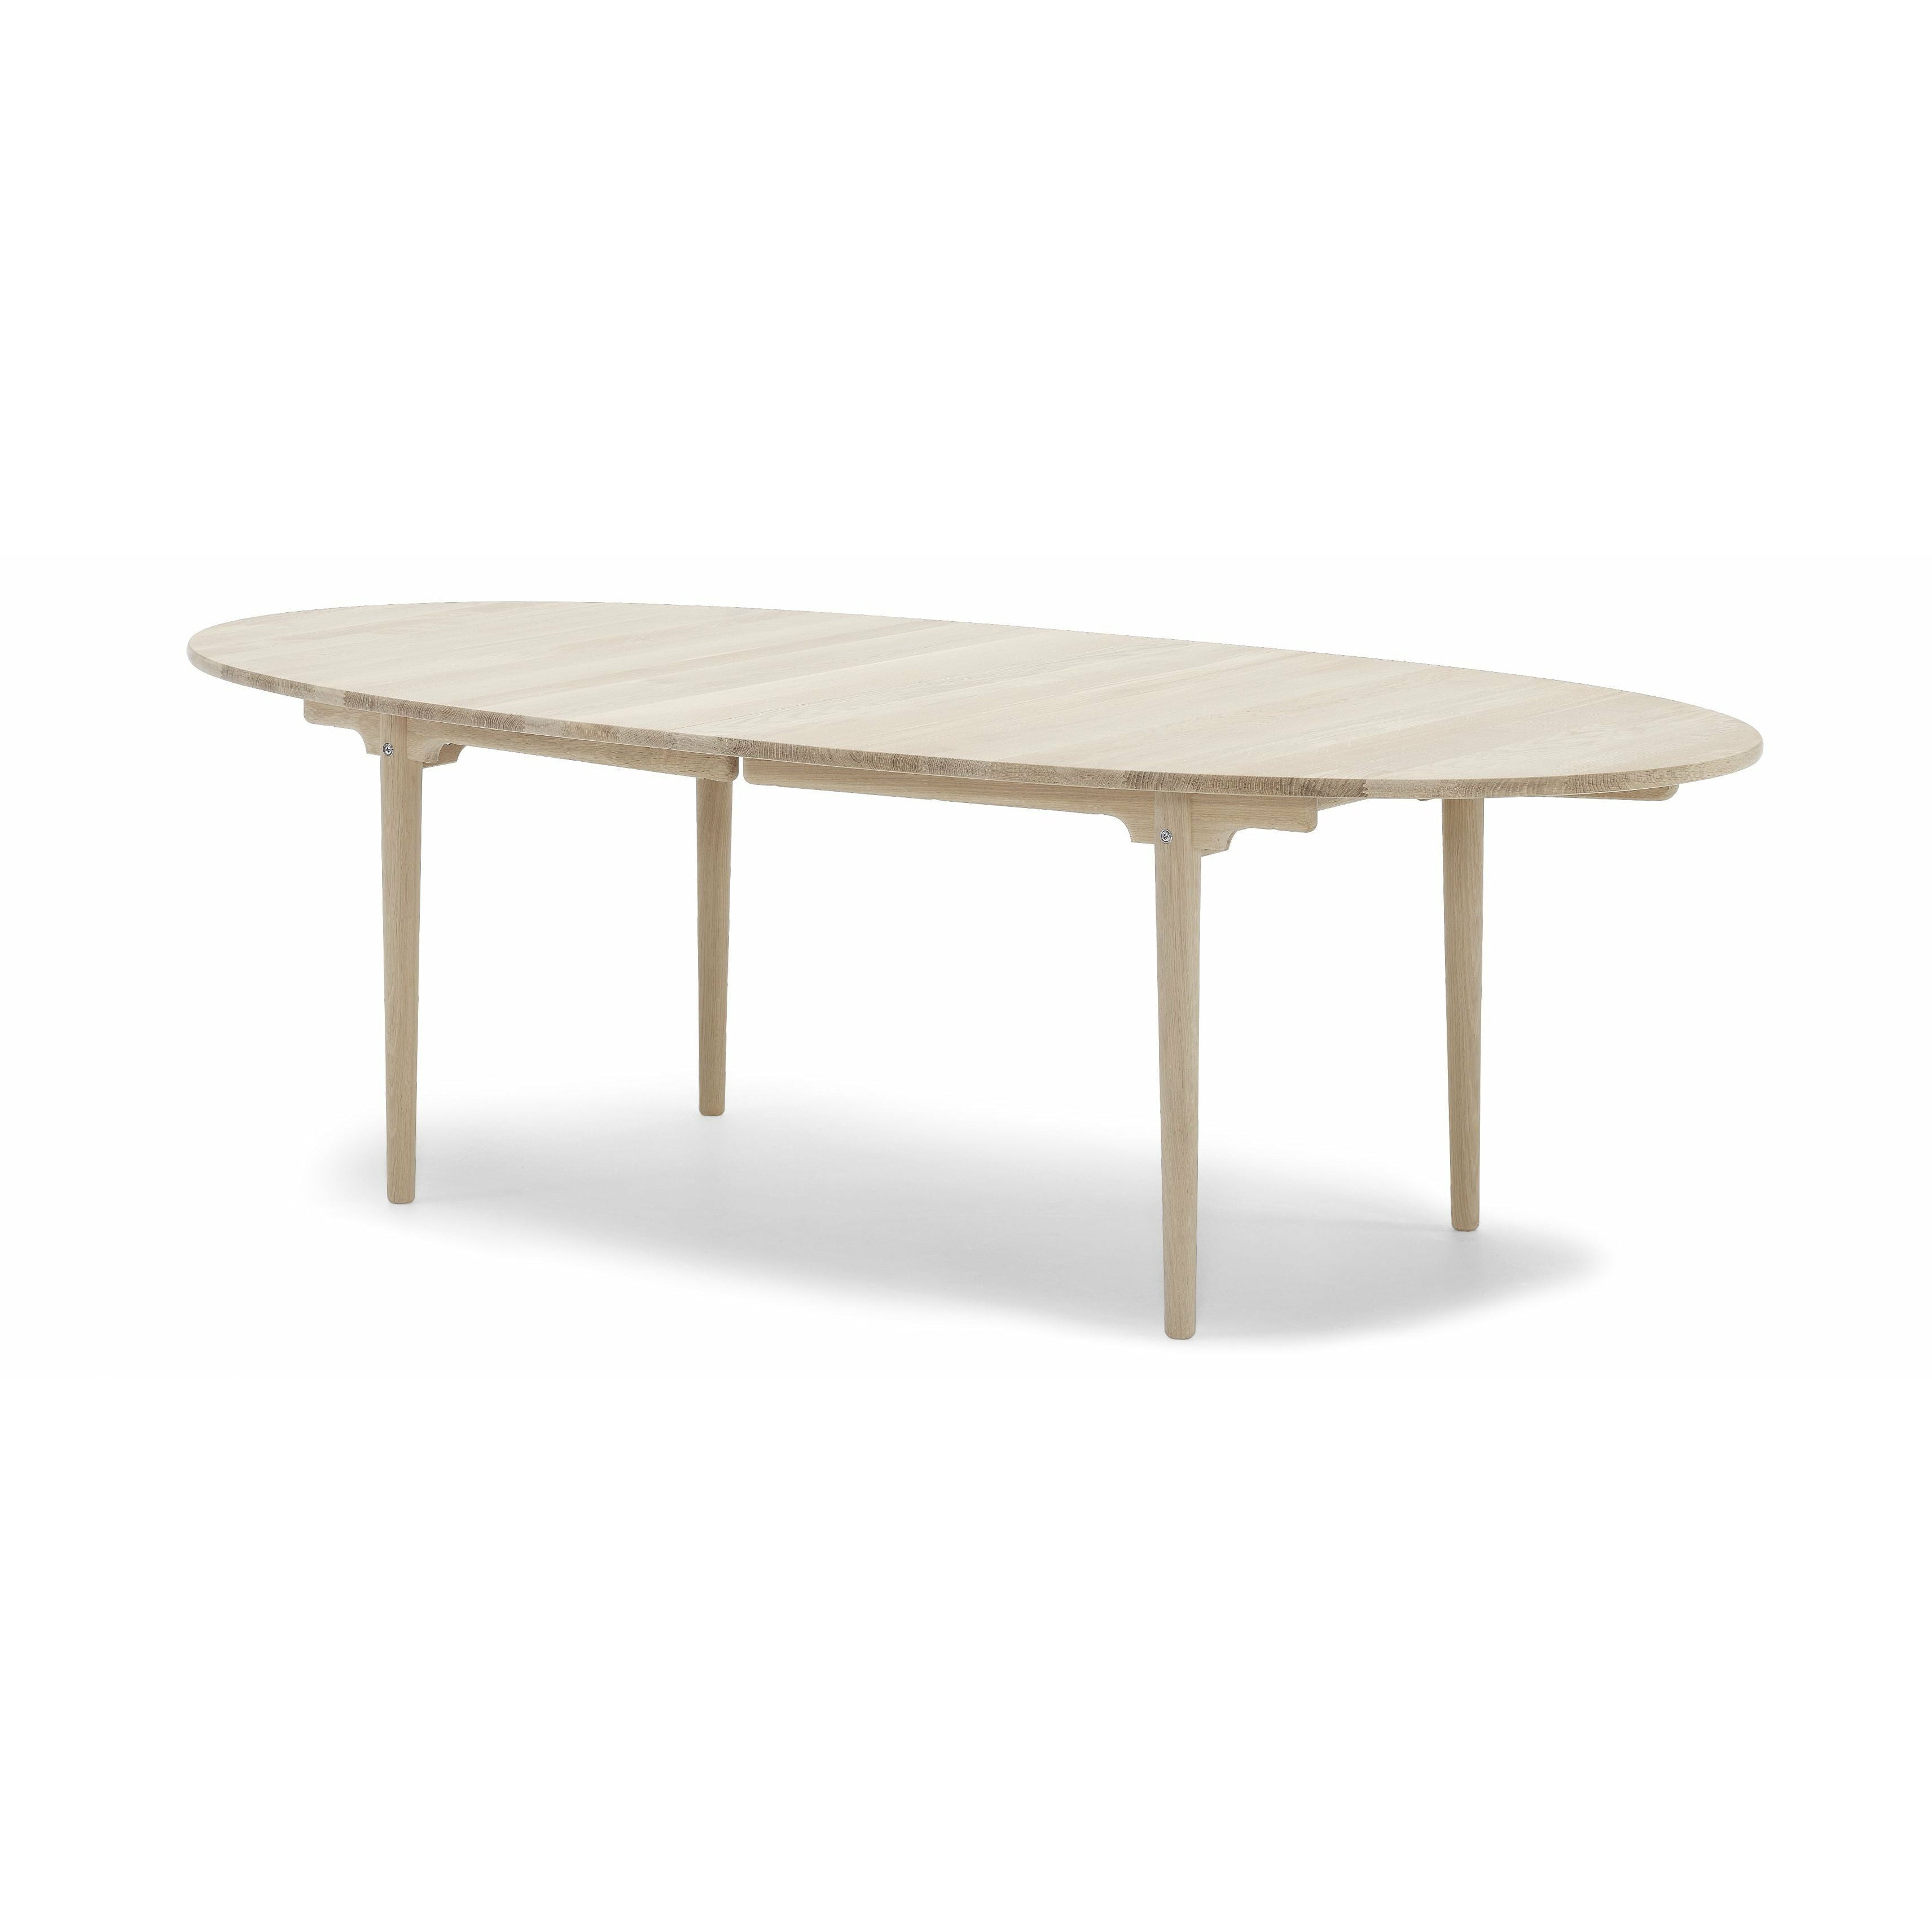 Carl Hansen CH339 matbord designad för 4 drag ut plattor, tvålad ek